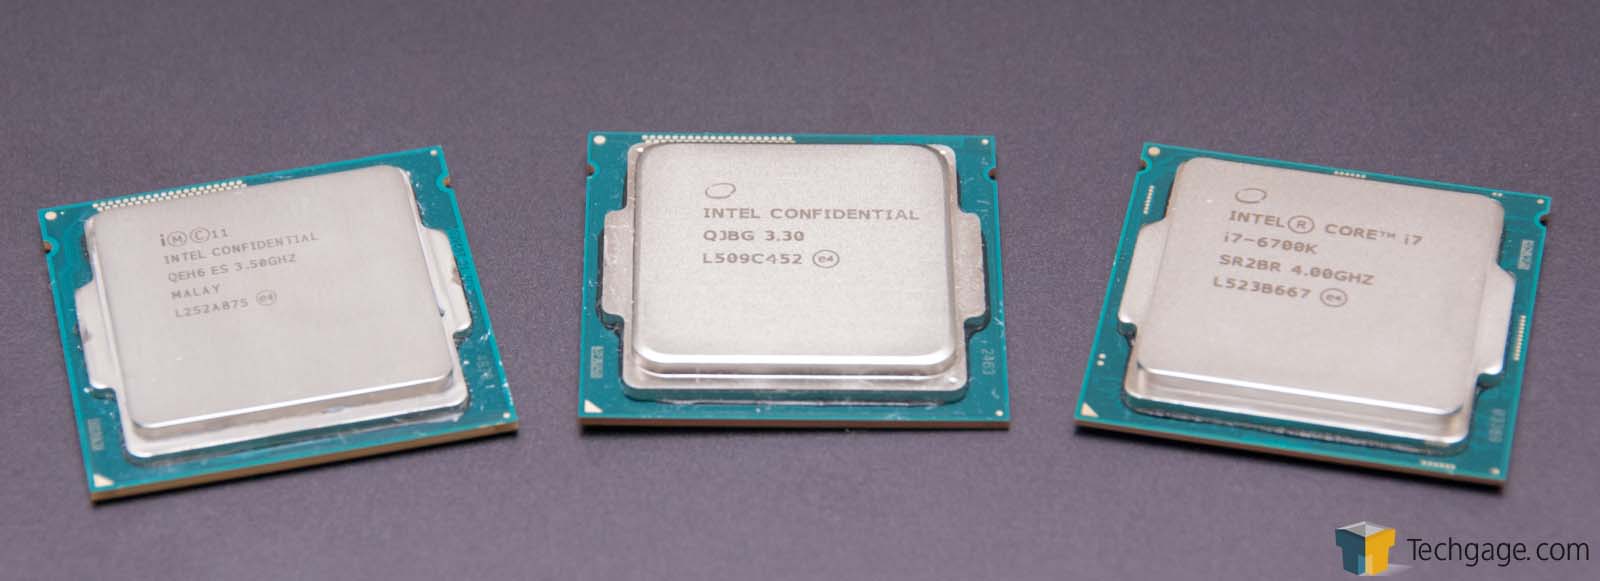 Intel’s ‘Skylake’ Core i7-6700K: A Performance Look – Techgage - 1600 x 581 jpeg 51kB